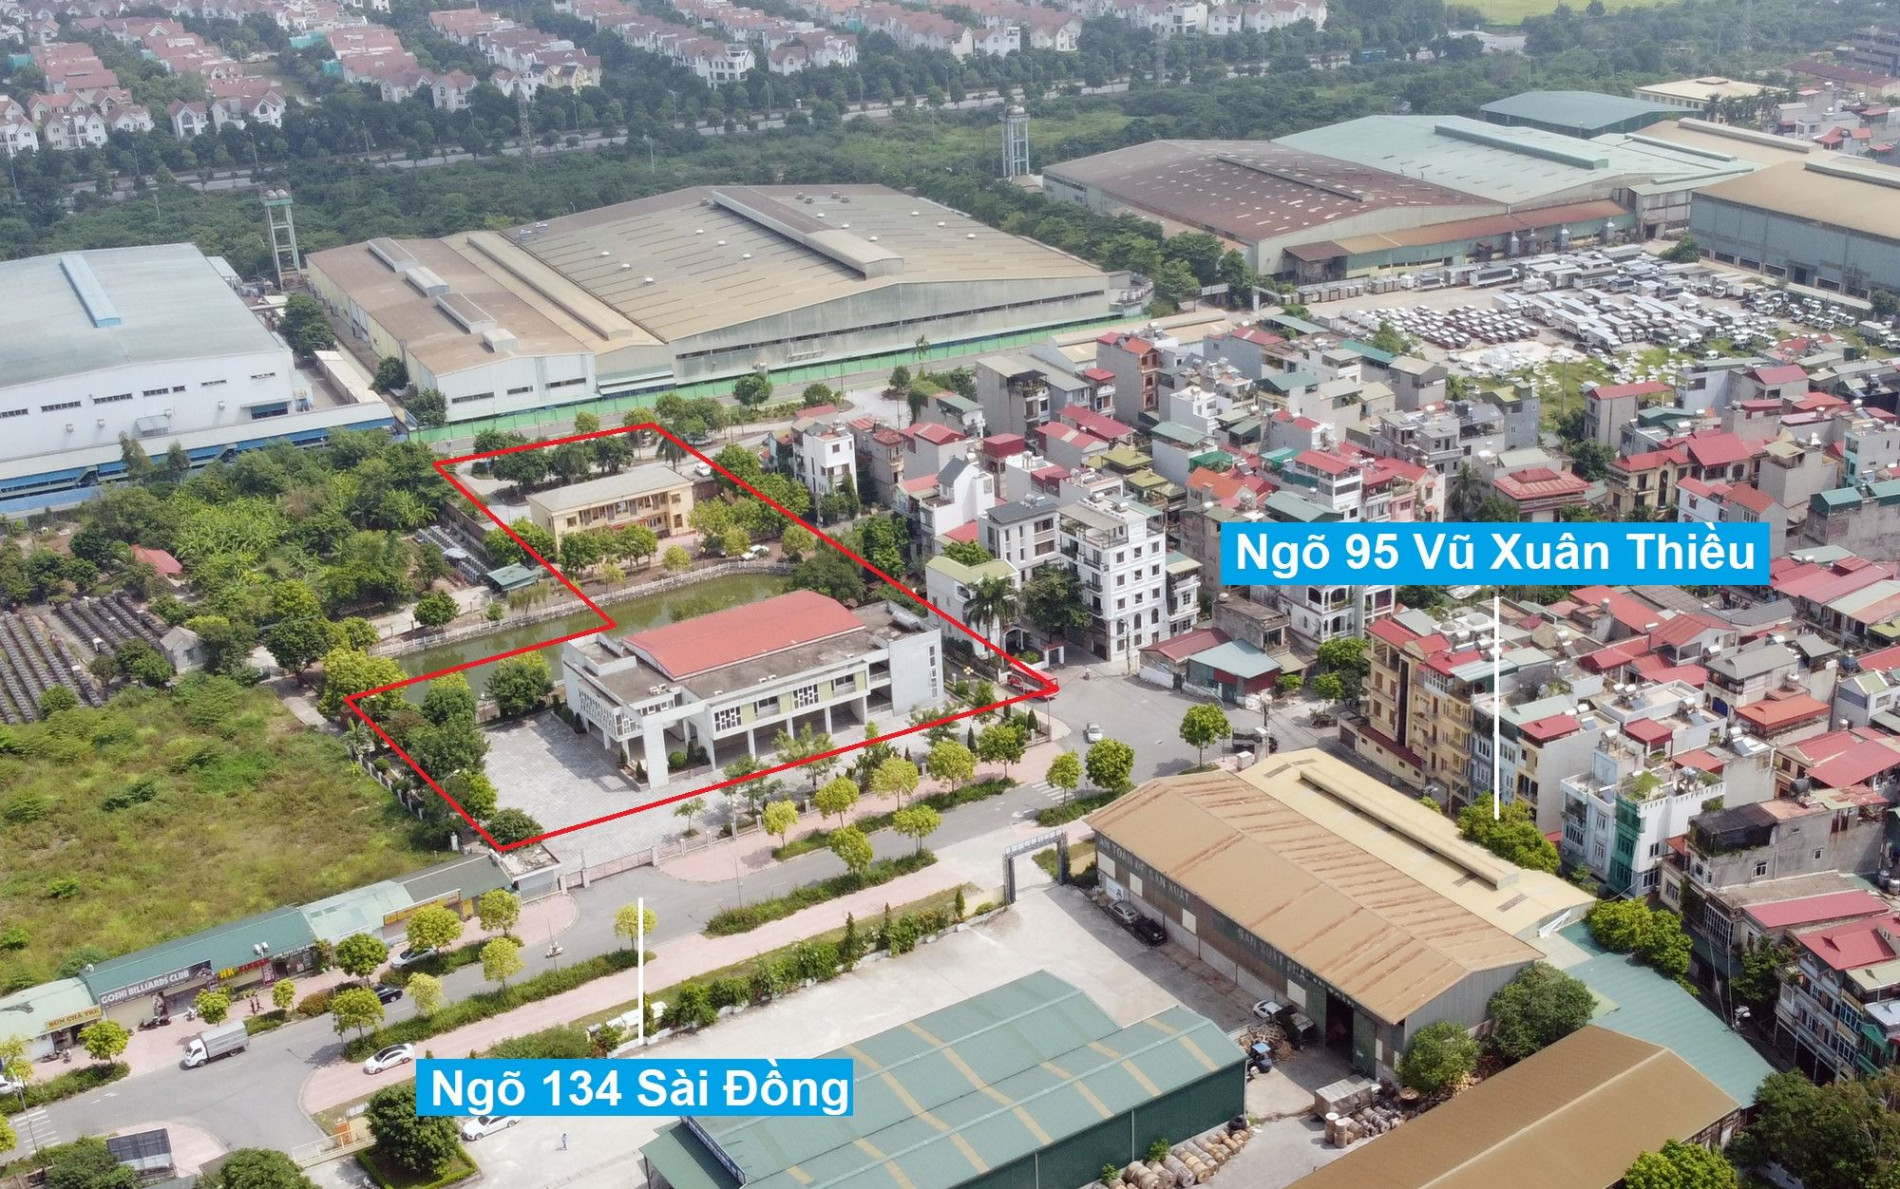 Những khu đất sắp thu hồi để xây trường học ở quận Long Biên, Hà Nội (phần 4)